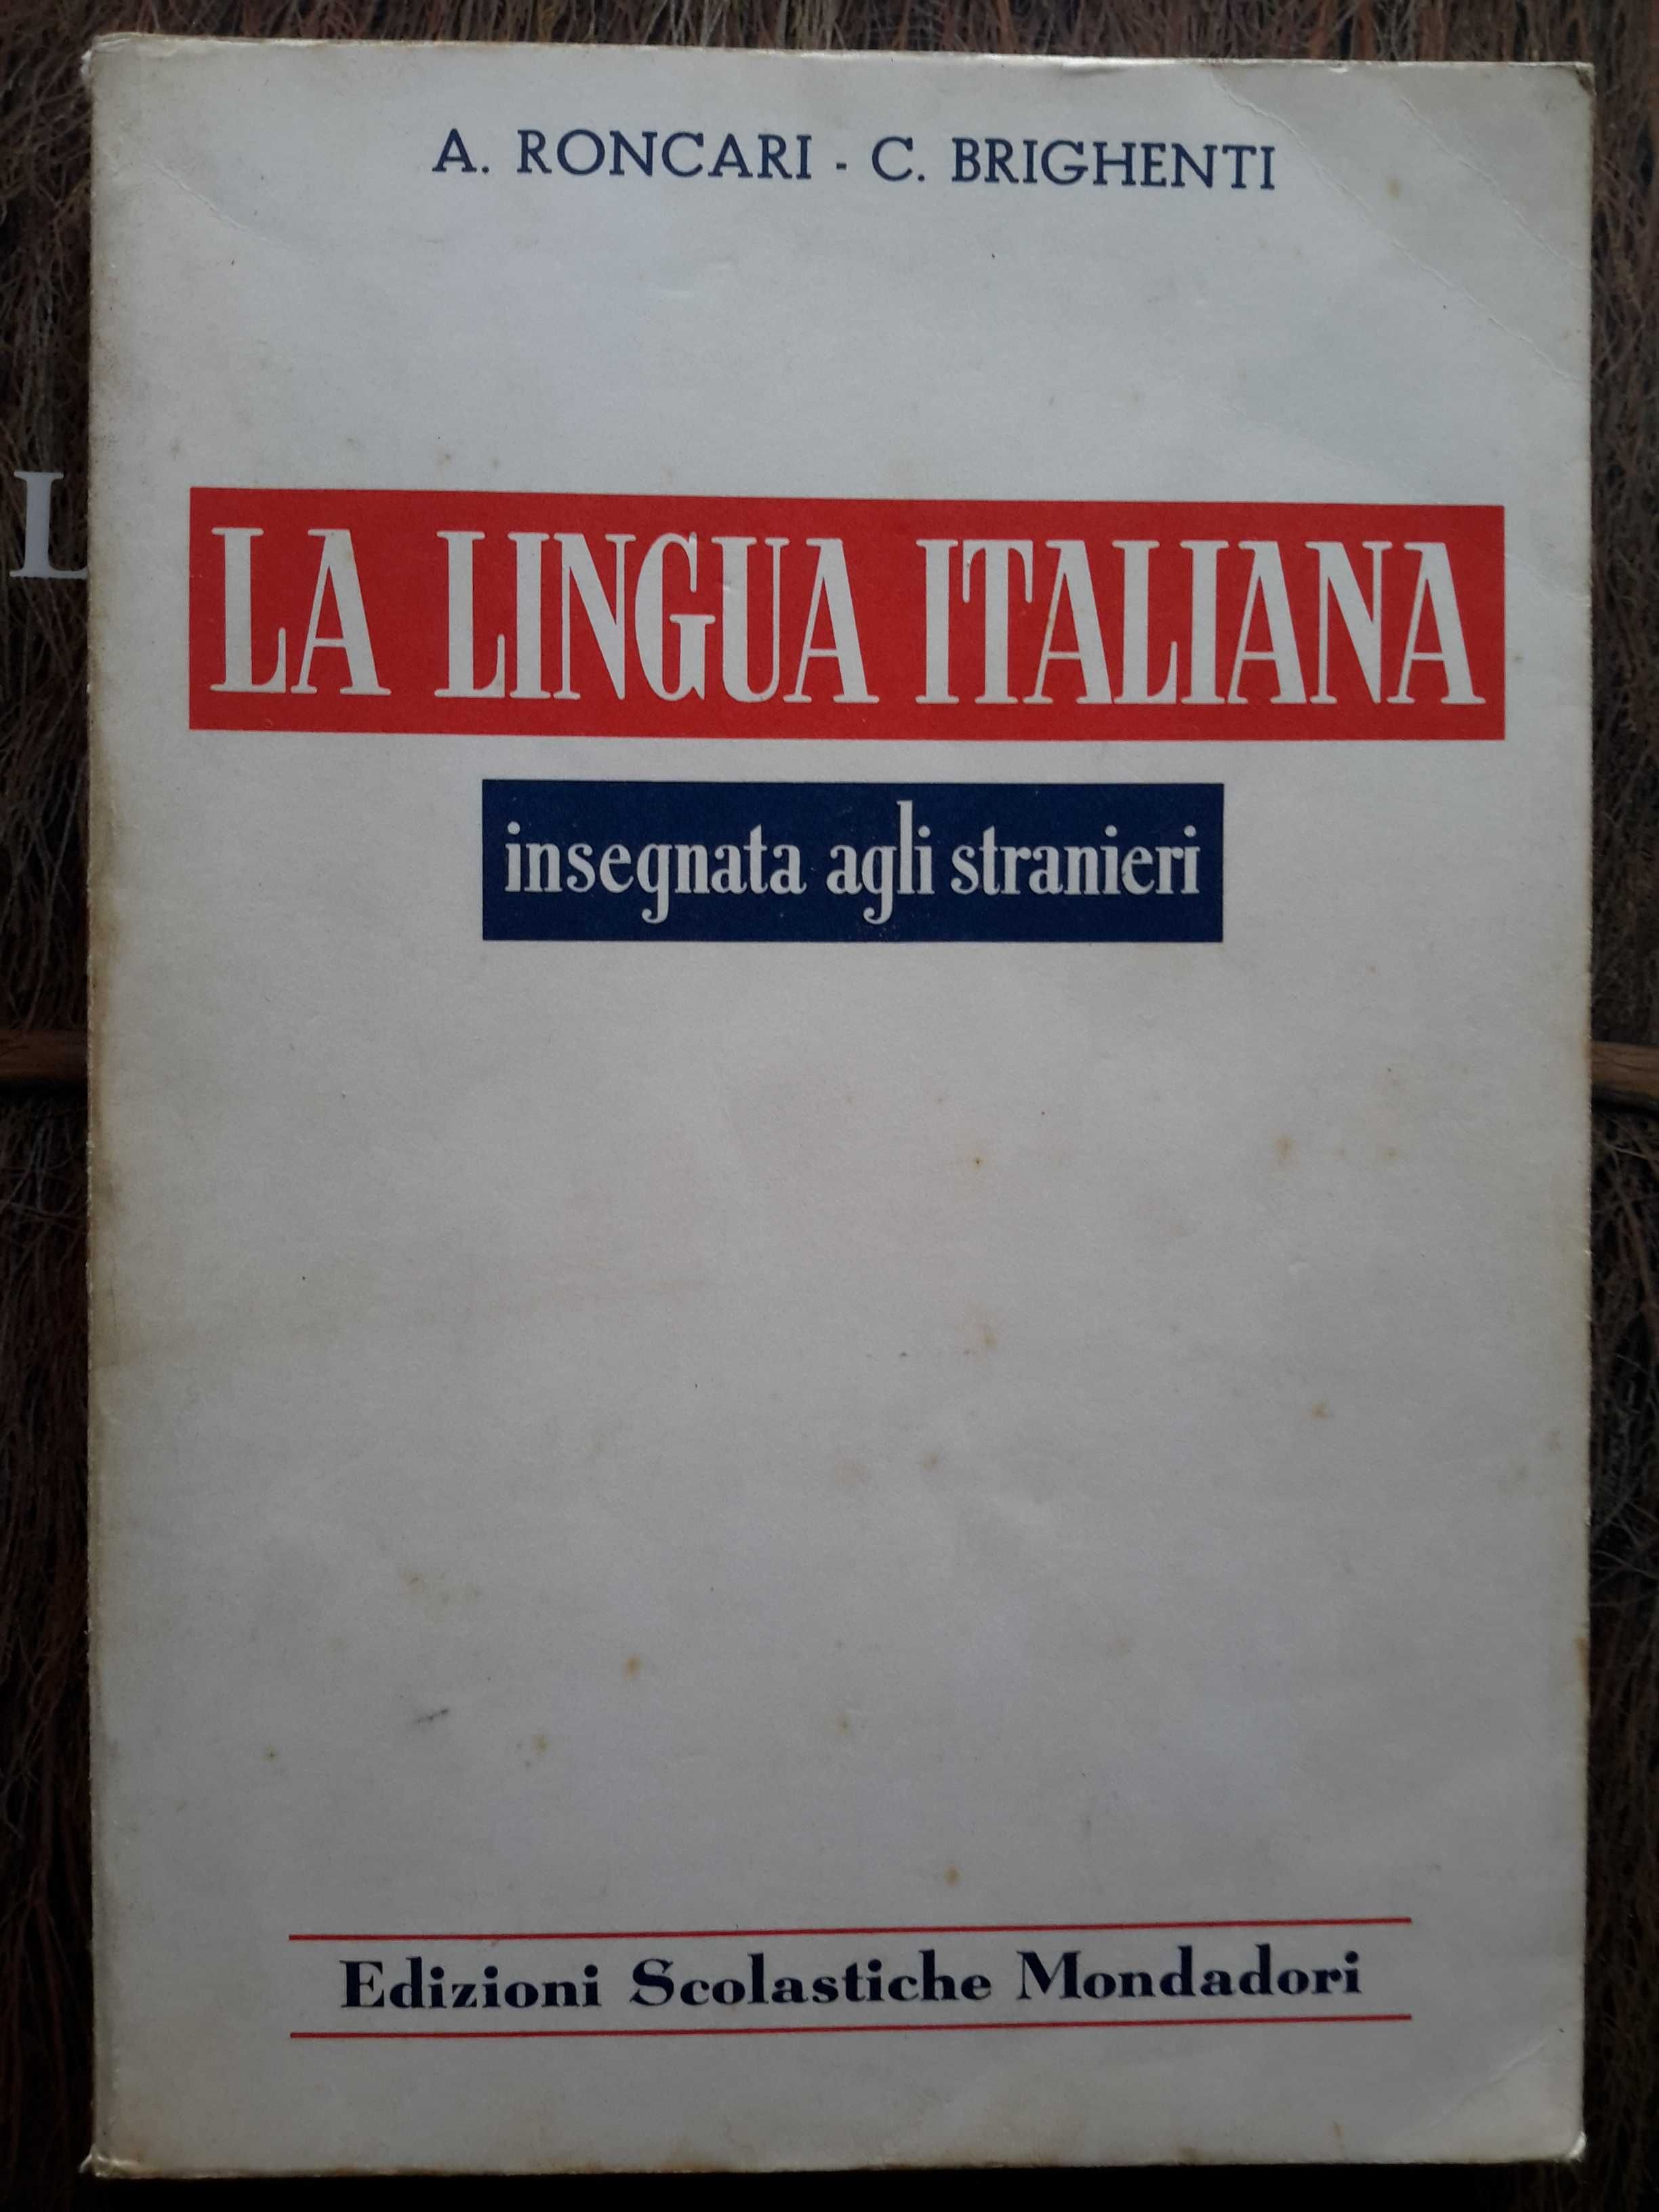 La Lengua Italiana Insegnata agli Stranieri